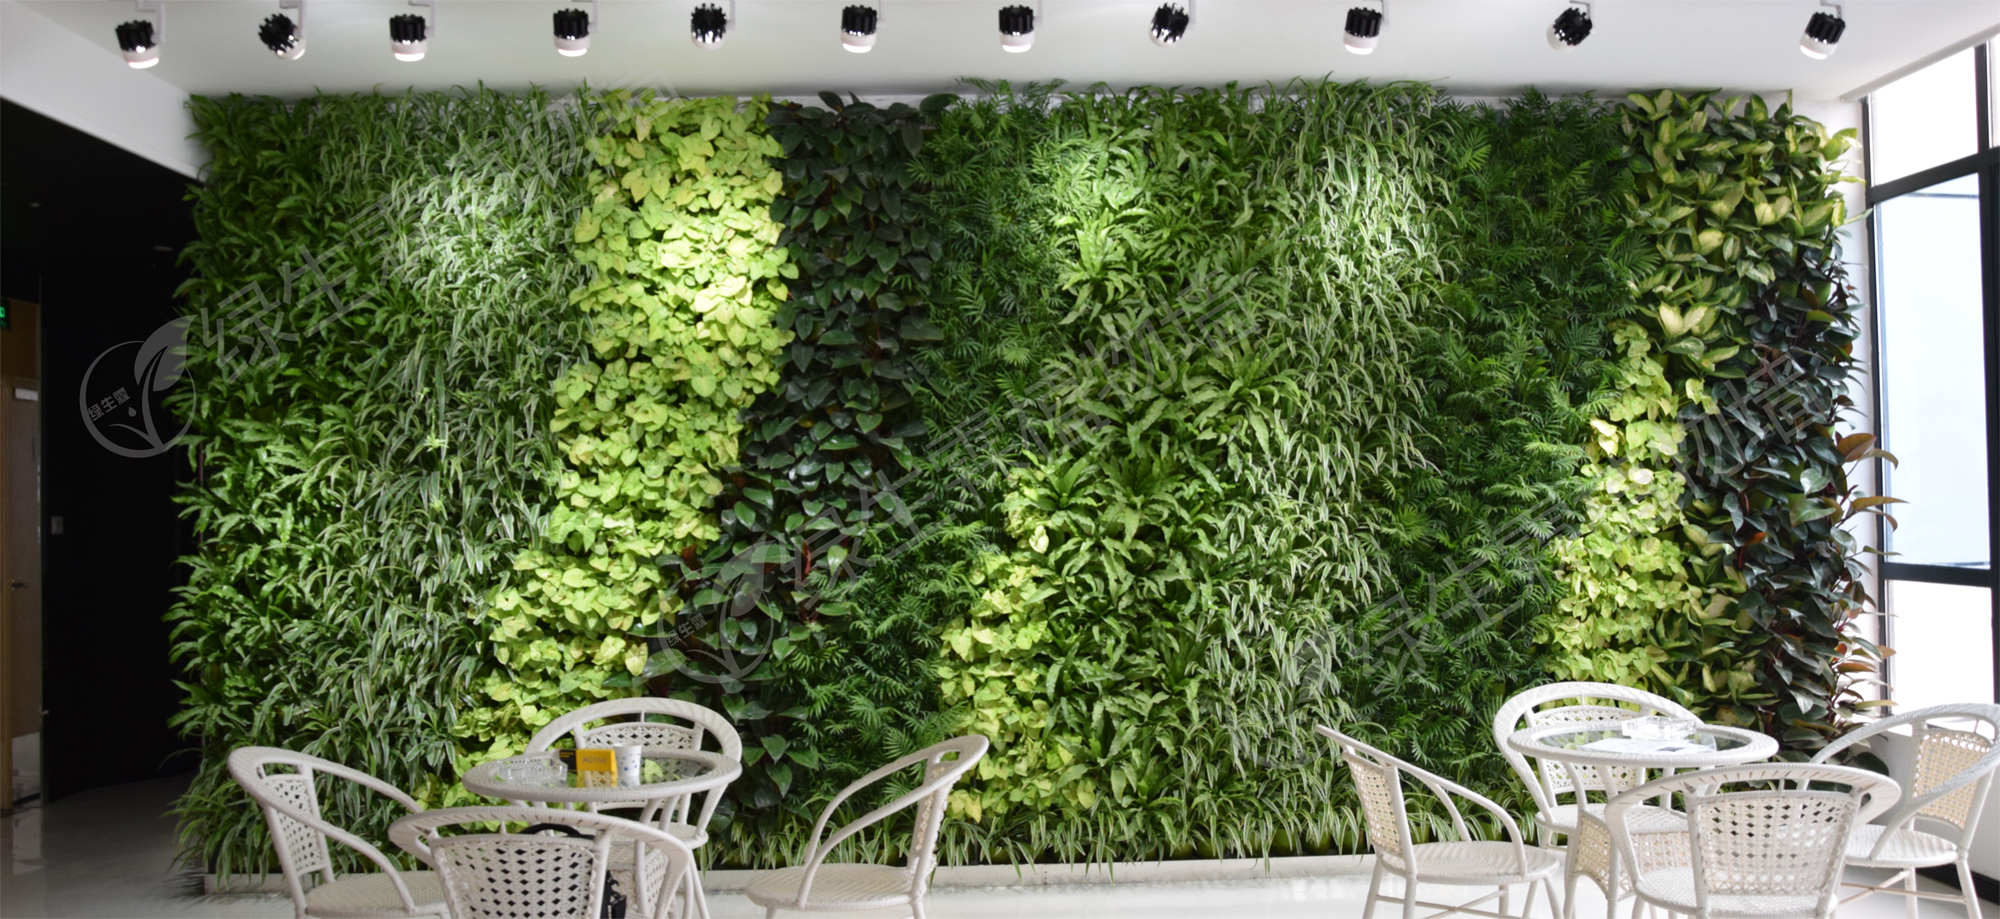 室内立体绿化植物-墙面绿化|垂直绿化|高架桥绿化|立体绿化|桥梁绿化|武汉市安友科技有限公司